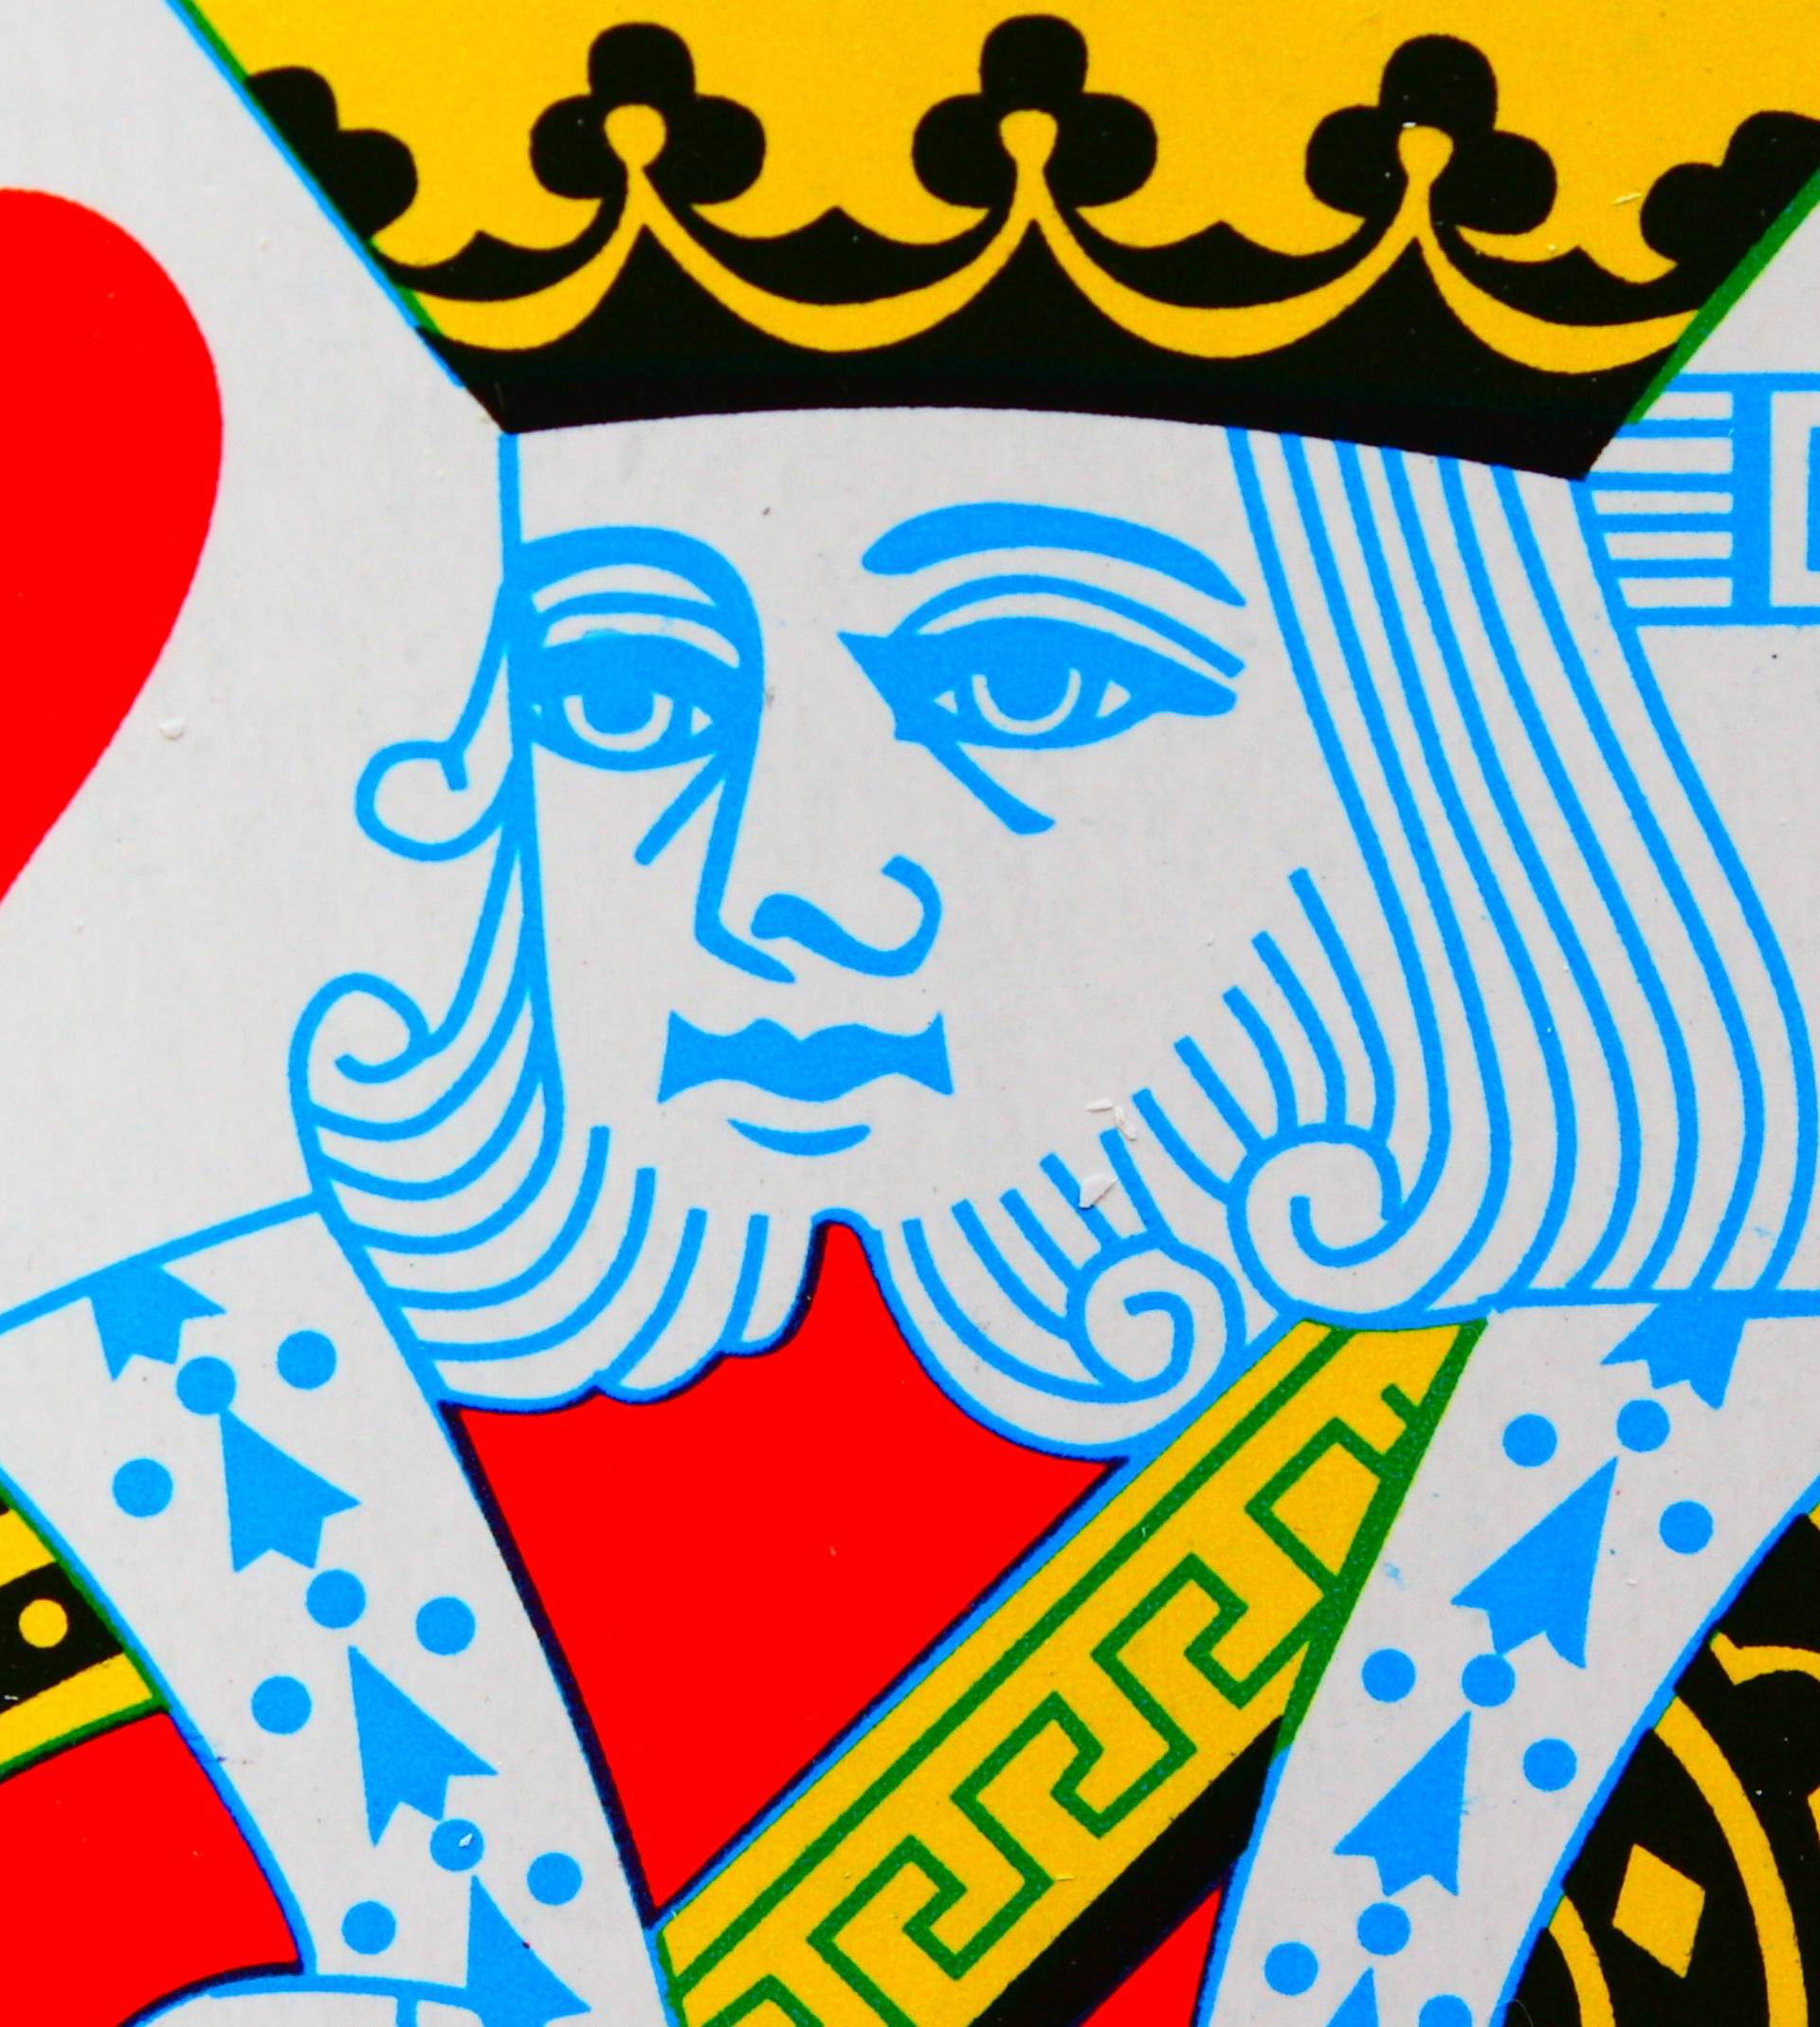 Misterij kralja srca: Zašto je kralj na kartama samoubojica?